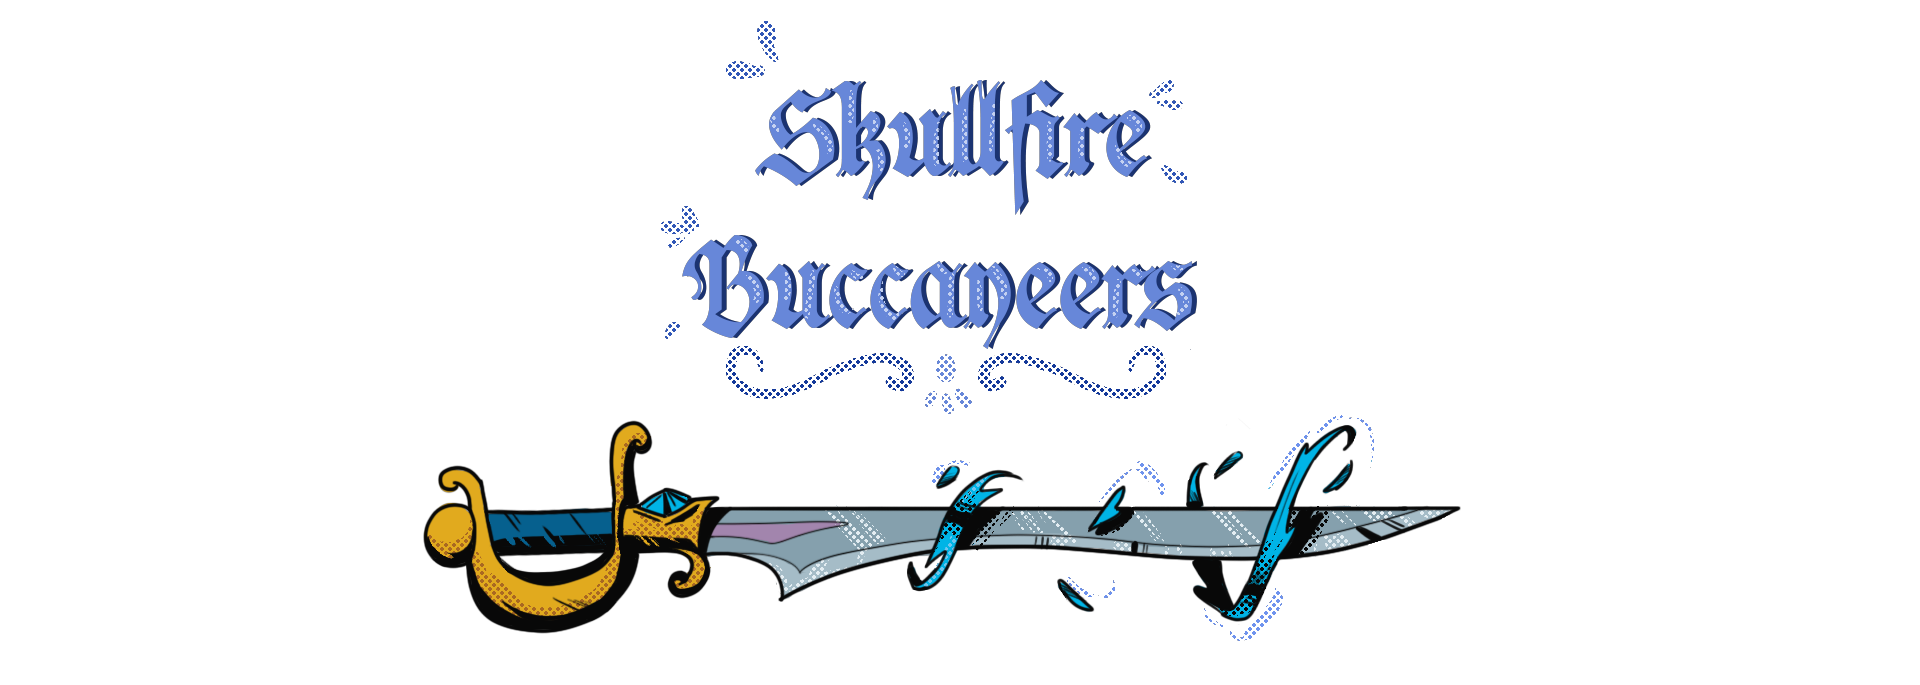 Skullfire Buccaneers